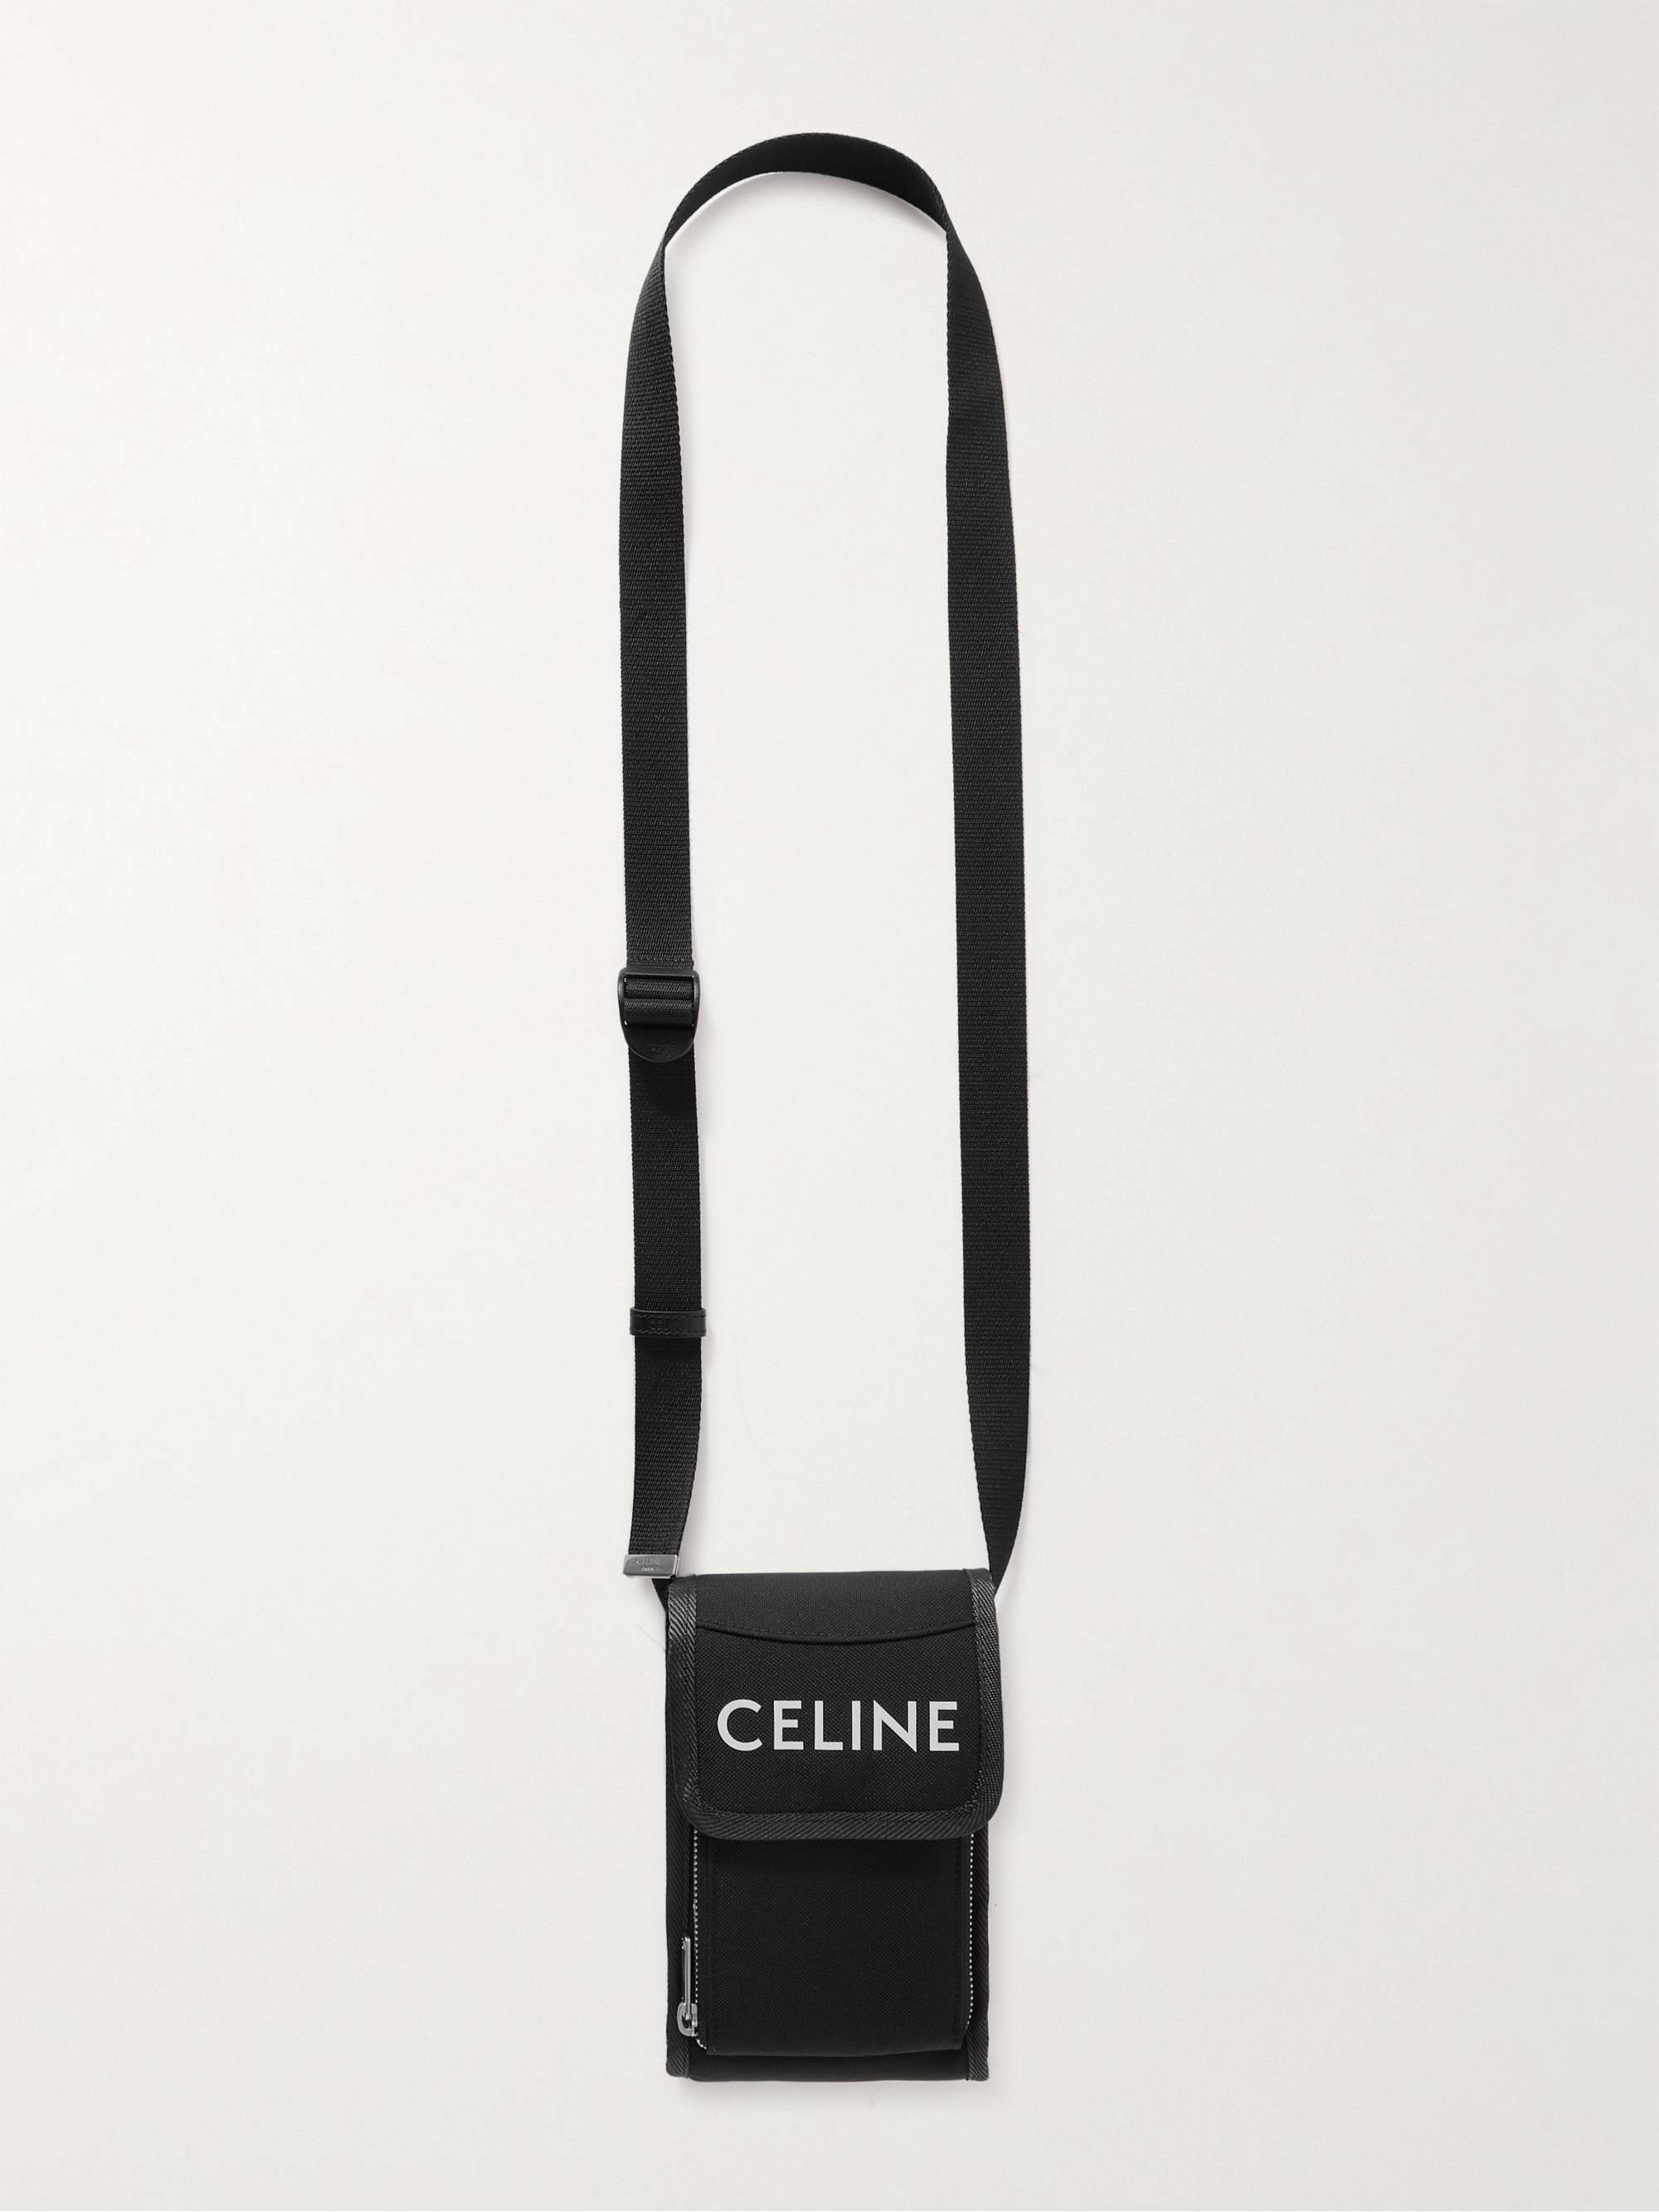 CELINE HOMME Logo-Print Canvas Phone Pouch